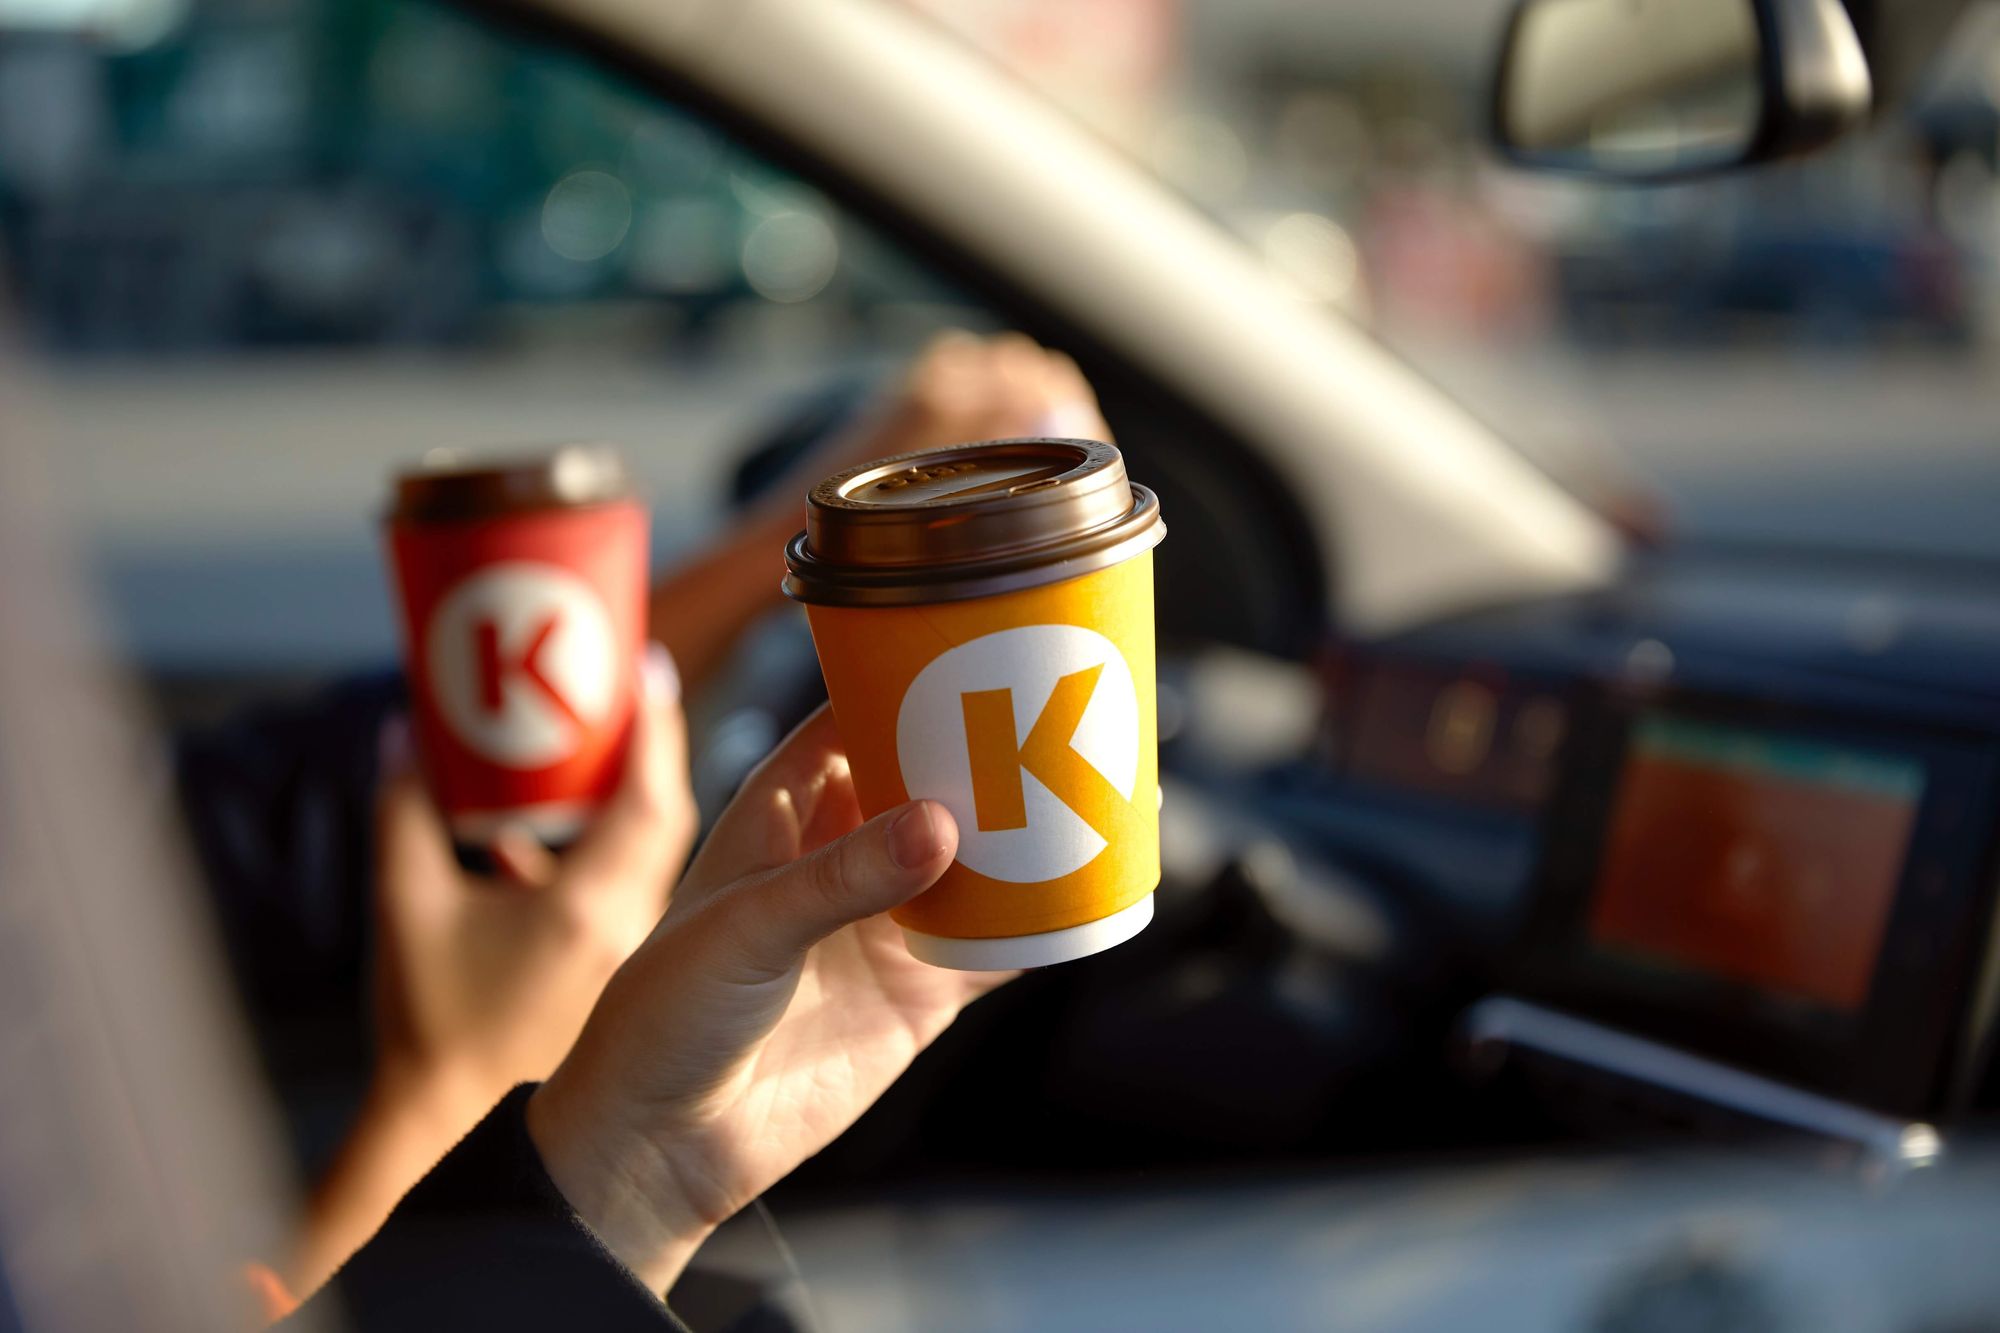 Save Coffee – результат сотрудничества сети АЗС Circle K и Löfbergs, направленная на минимизацию ненужных отходов кофейных зерен